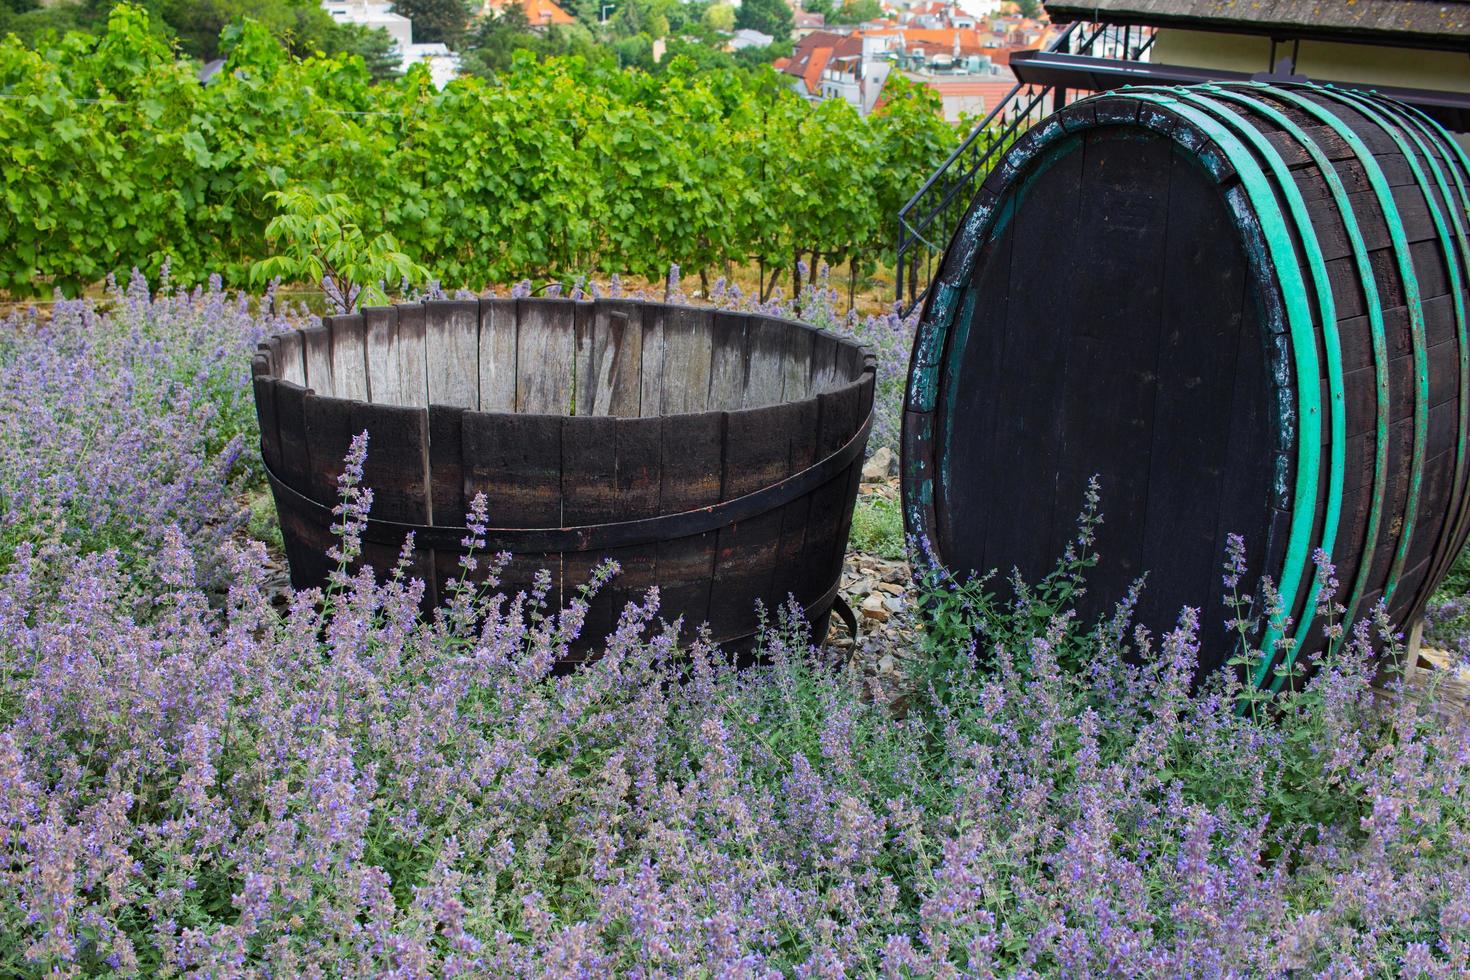 paisaje de viñedos en chez republic, jardín en praga en verano foto